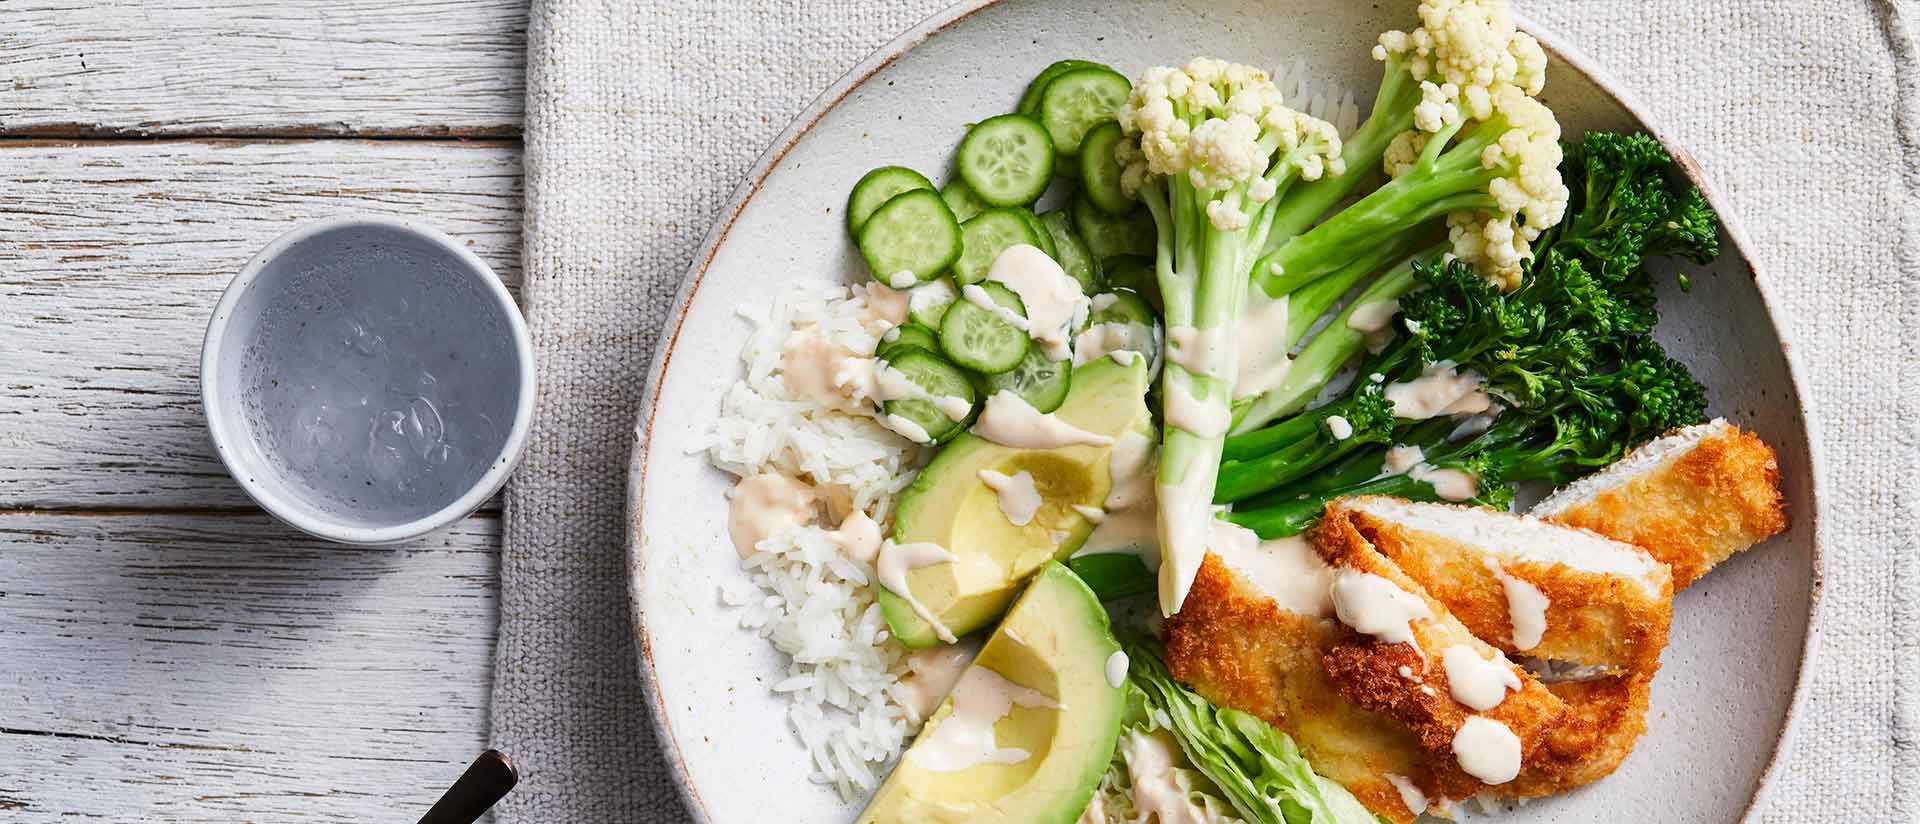 Katzu Chicken Broccolini And Fioretto Bowl Recipe